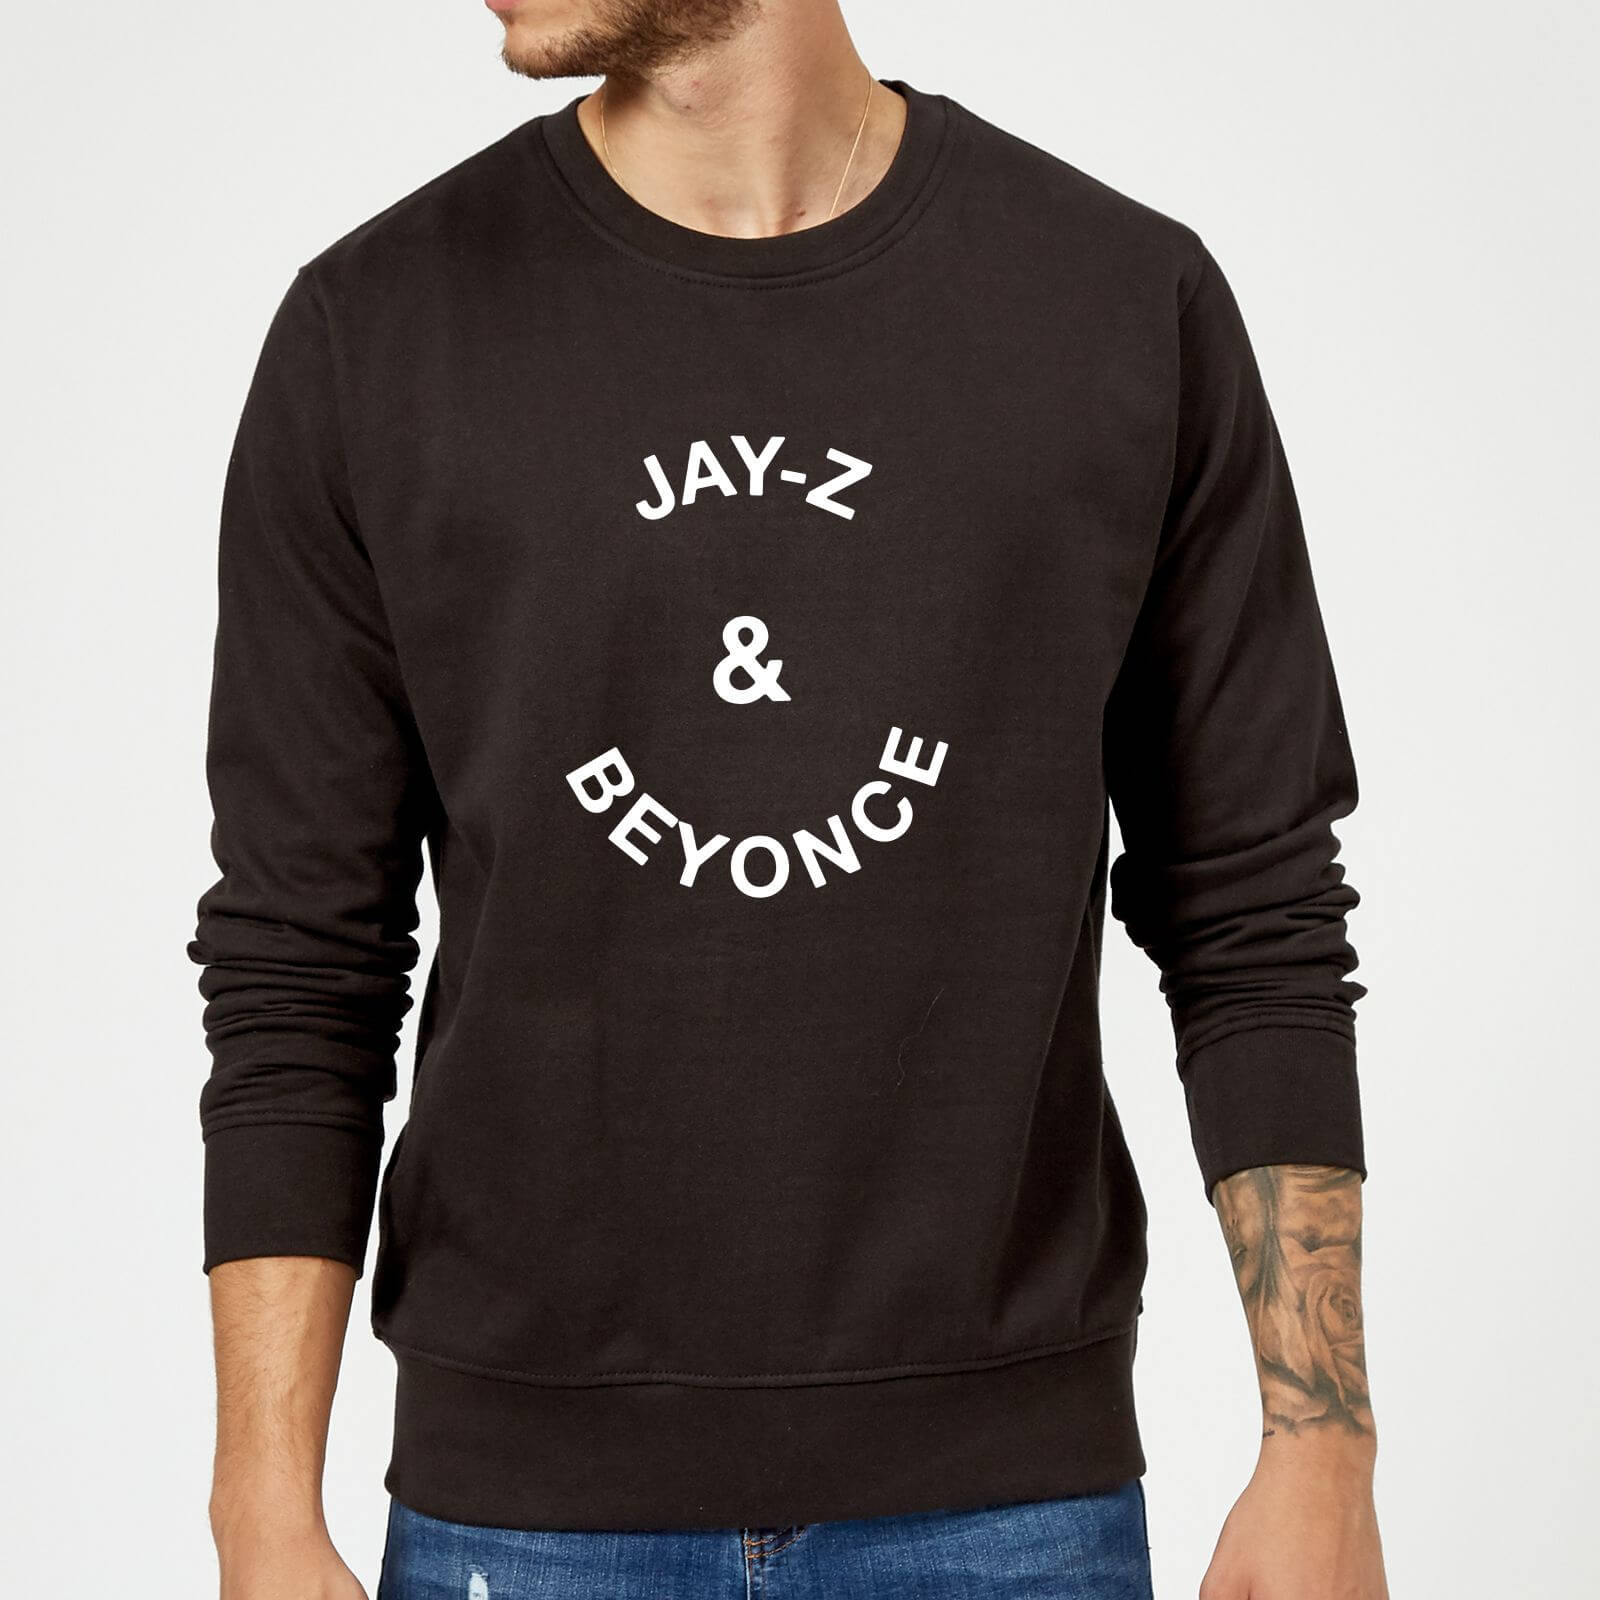 Jay-Z & Beyonce Sweatshirt - Black - L - Black